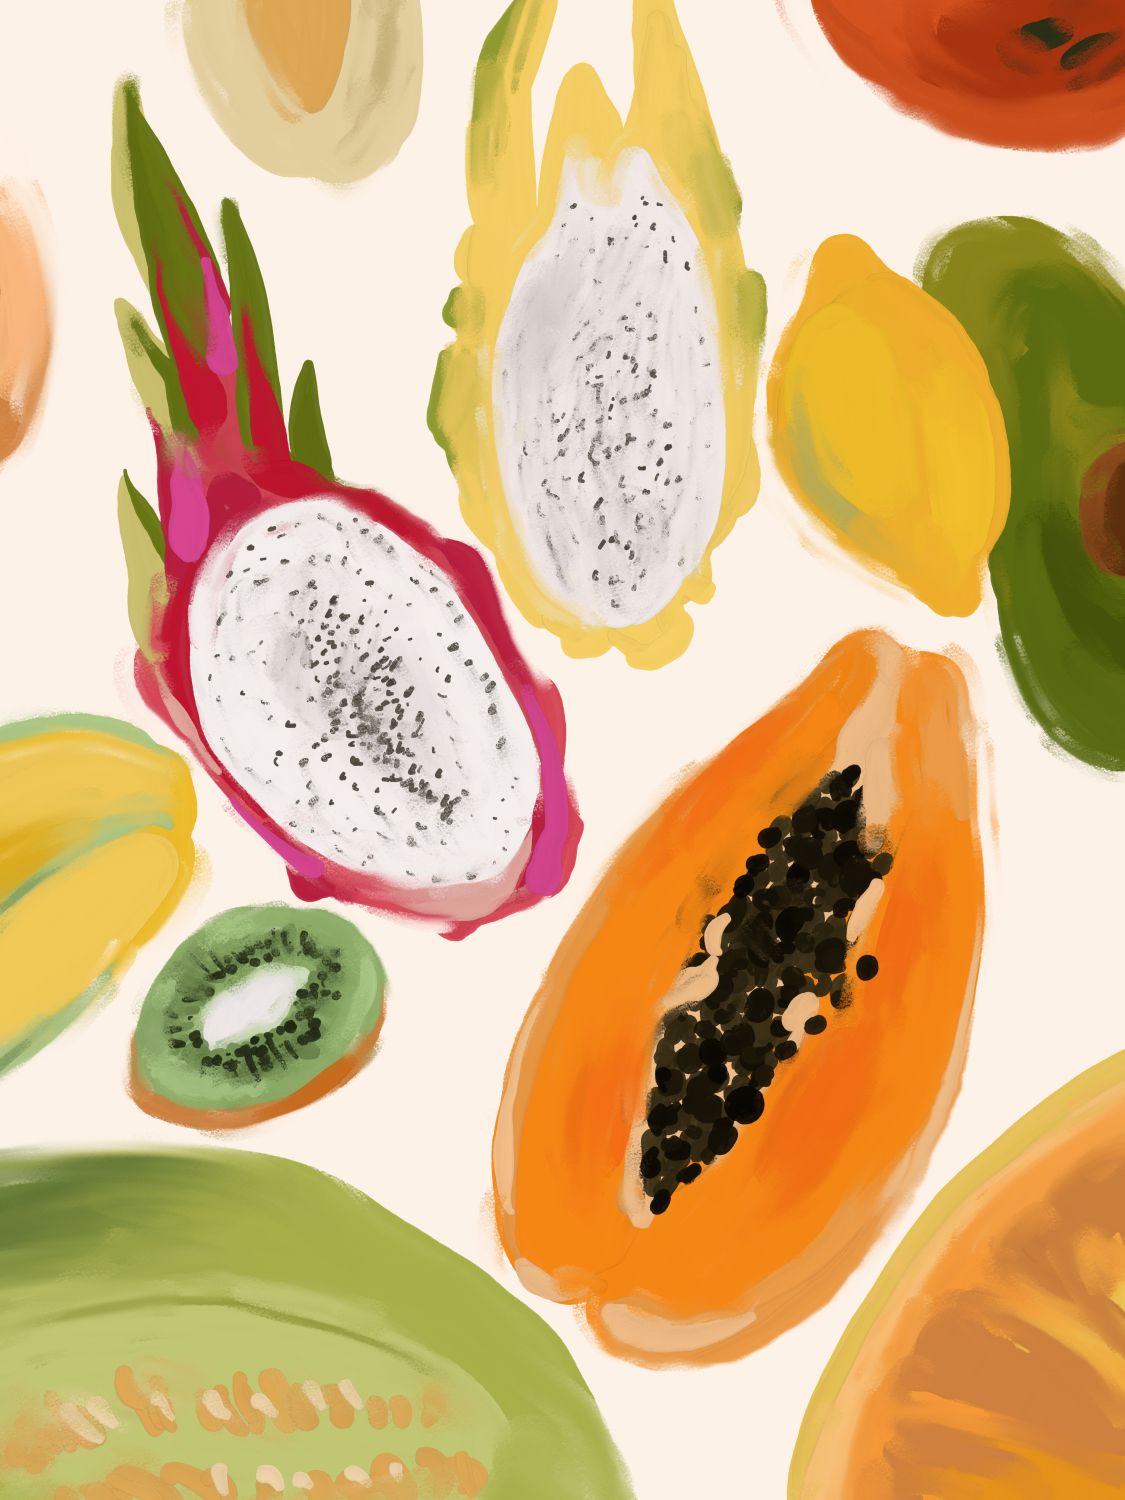 Постер интерьерный «Тропические фрукты», А4